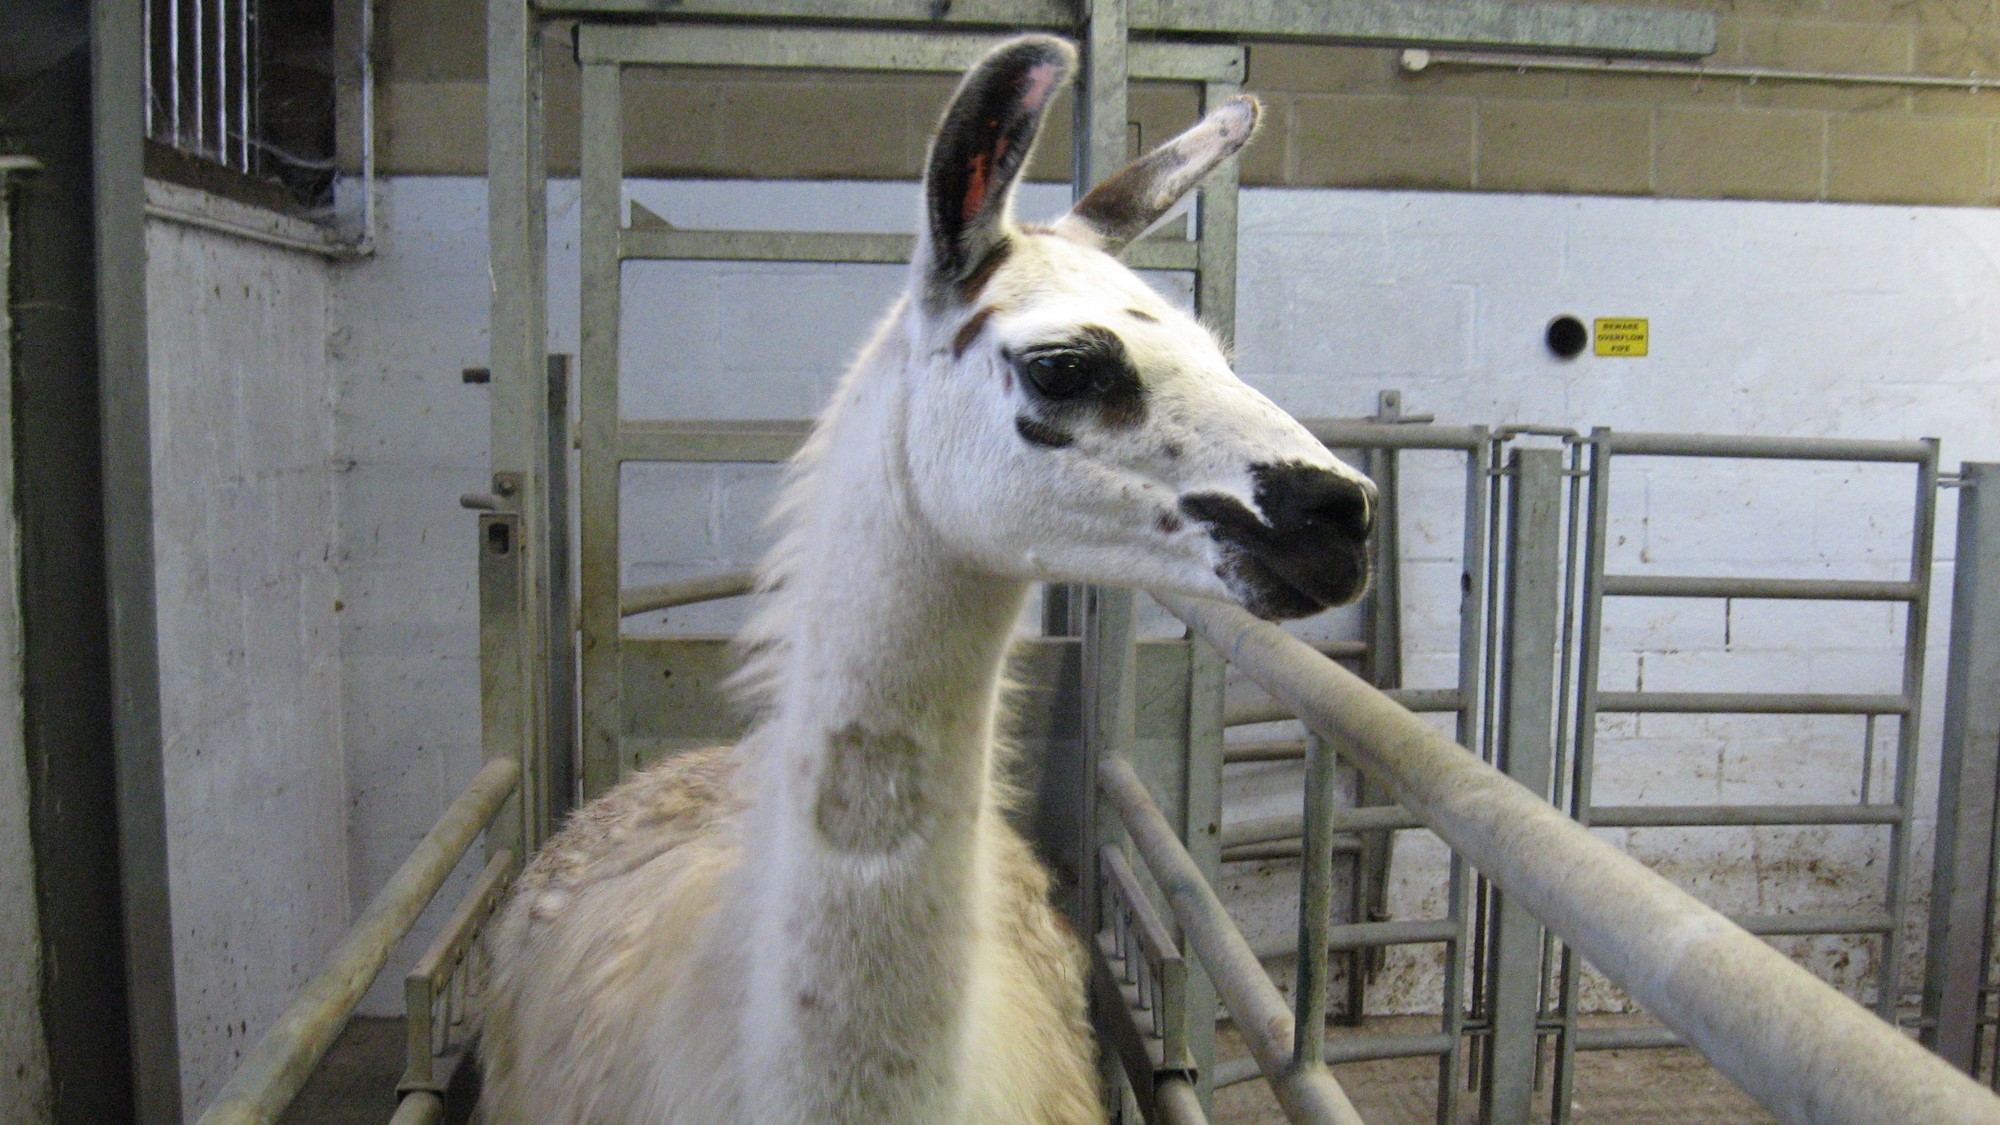 Fifi the llama